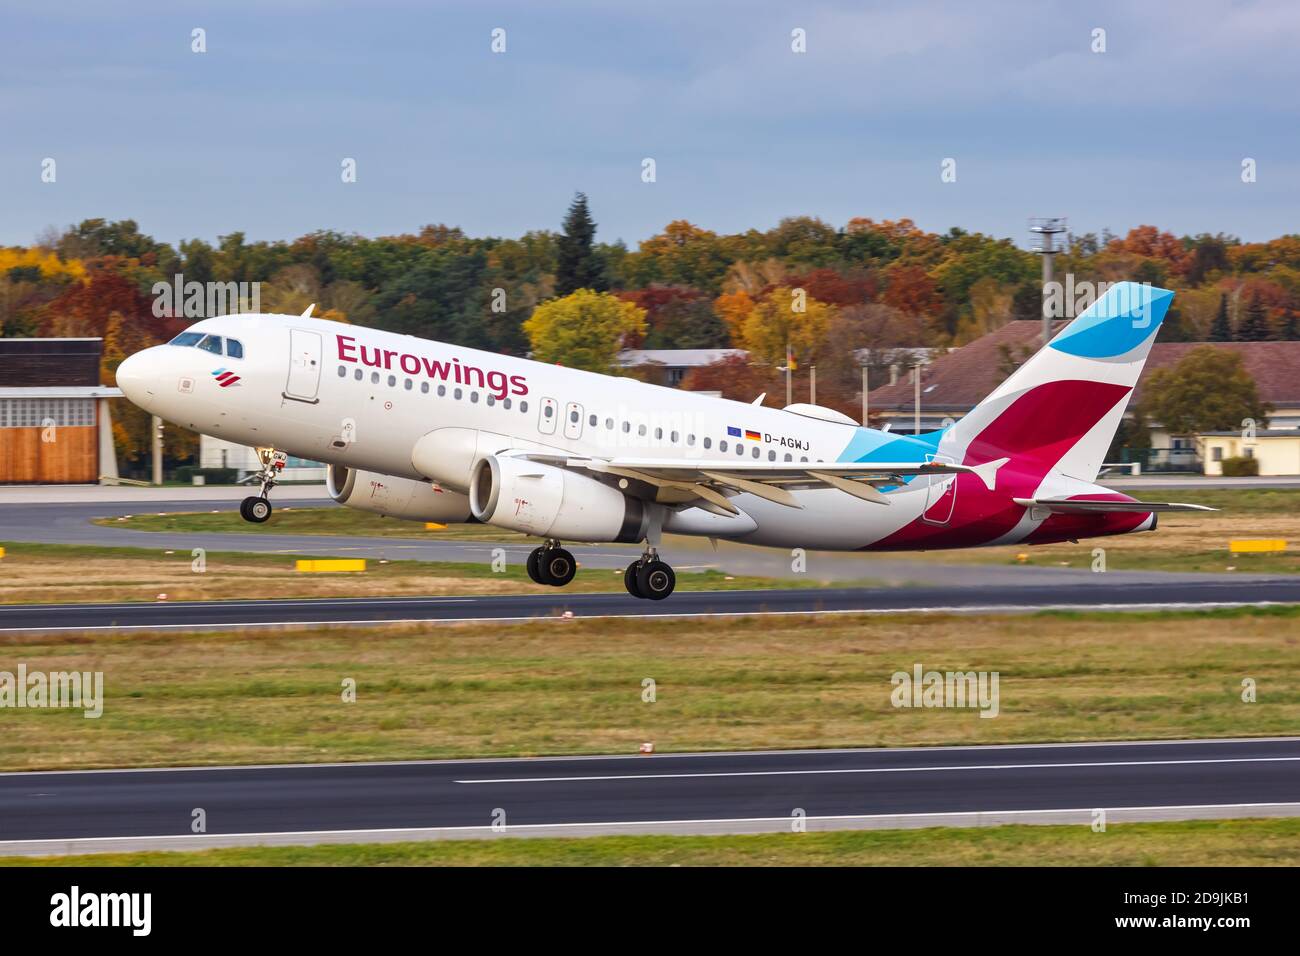 Berlin, Allemagne - 27 octobre 2020 : Eurowings Airbus A319 à l'aéroport de Berlin Tegel en Allemagne. Airbus est une base européenne de constructeurs d'avions Banque D'Images